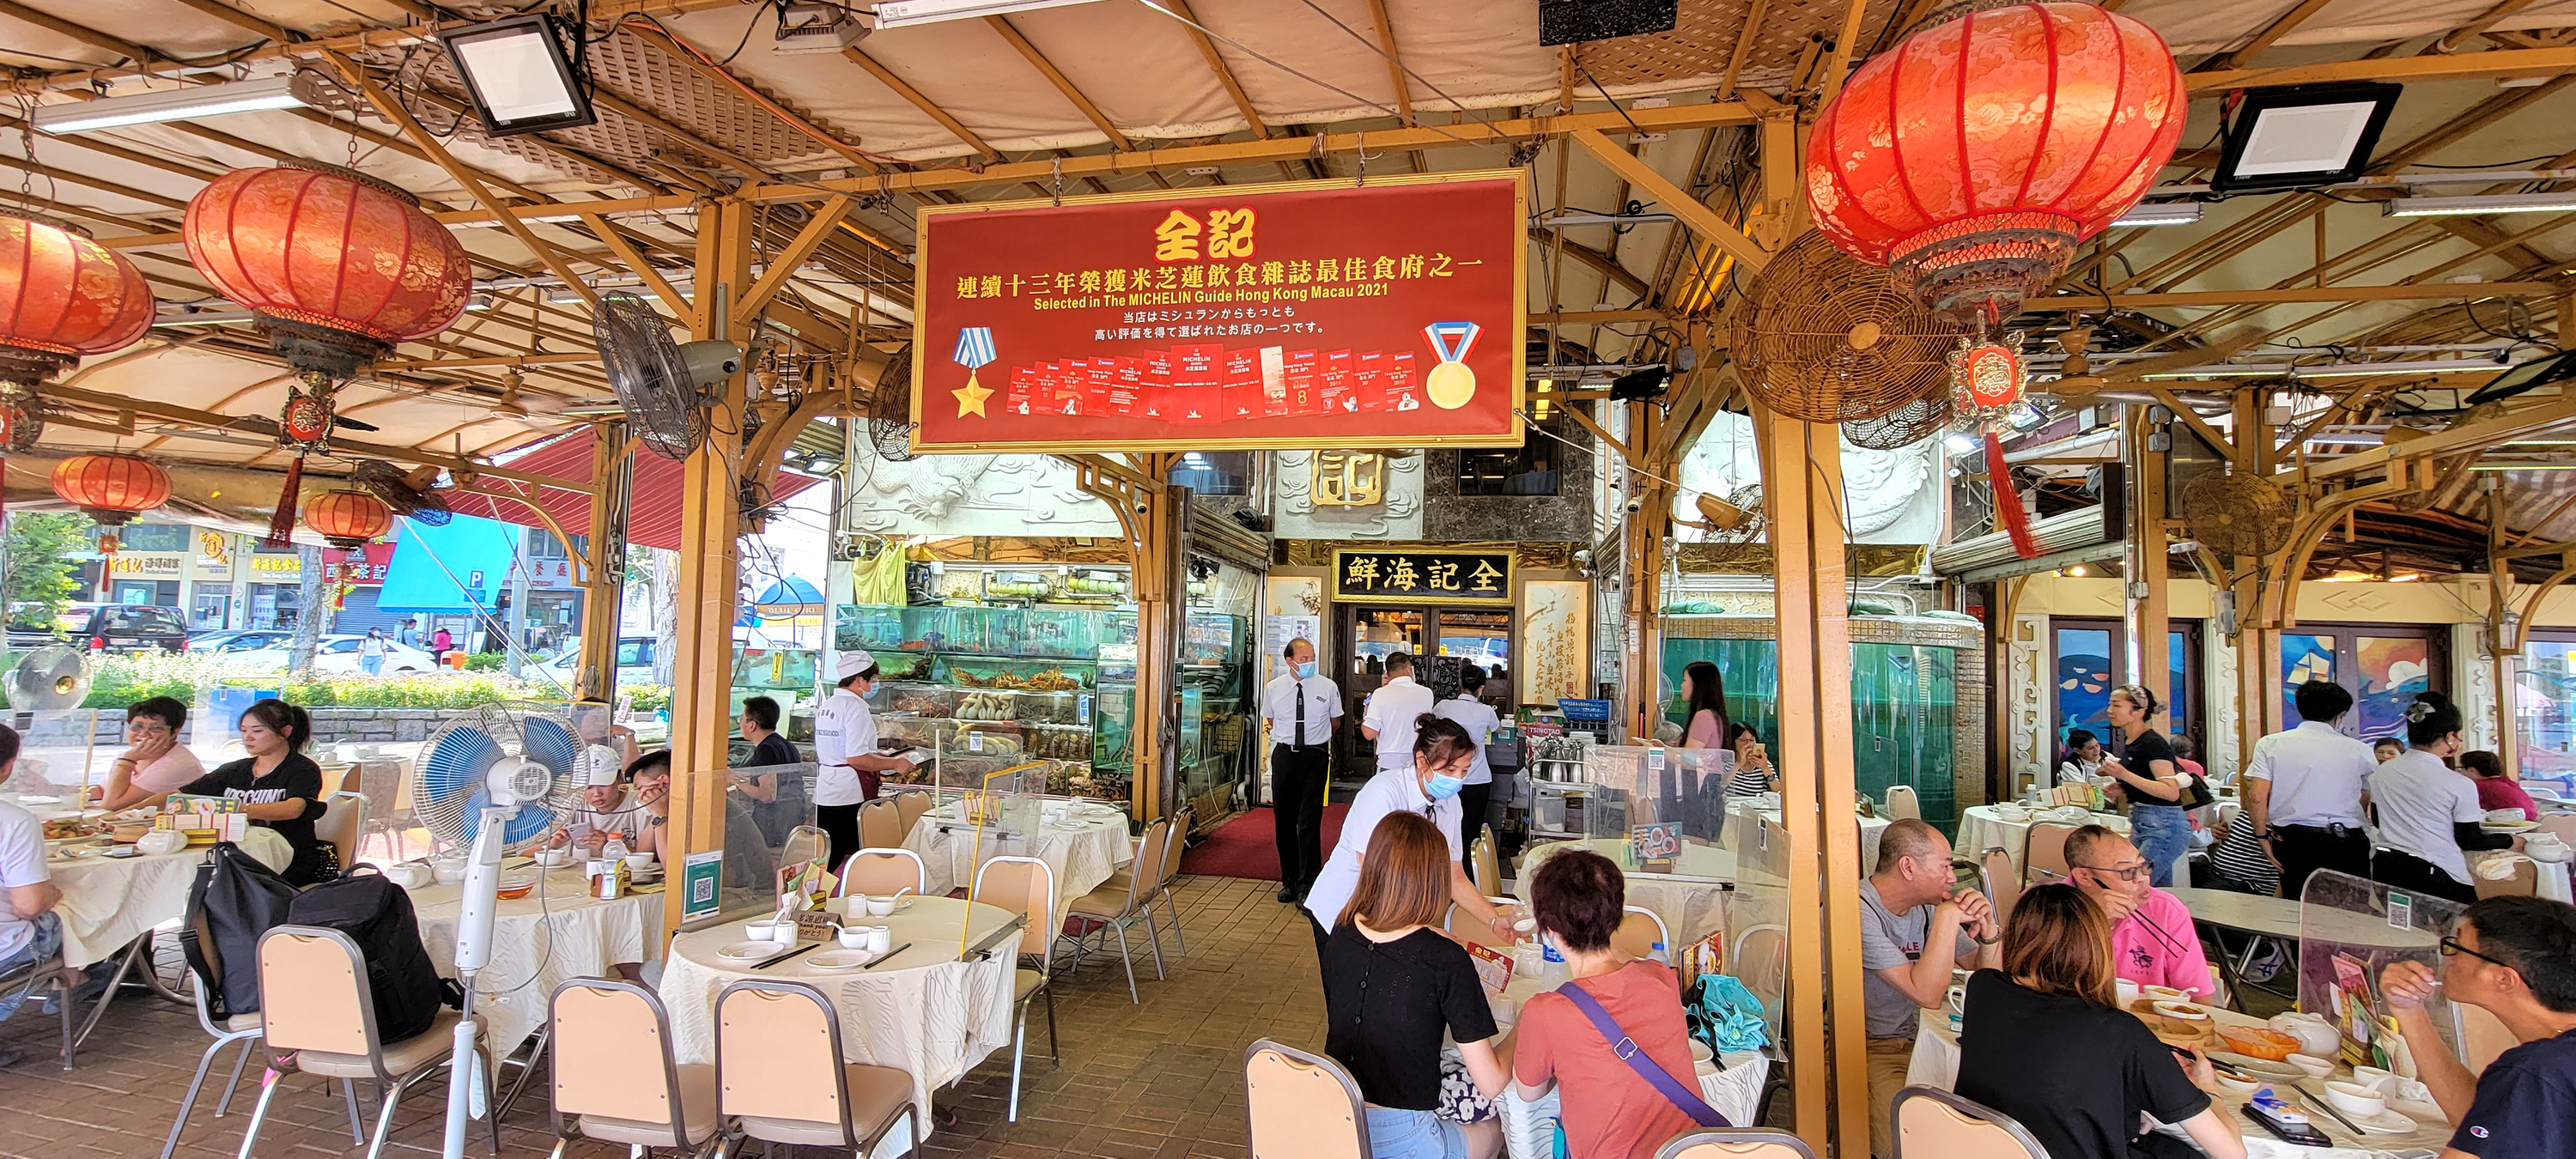 Sai Kung Seafood Market